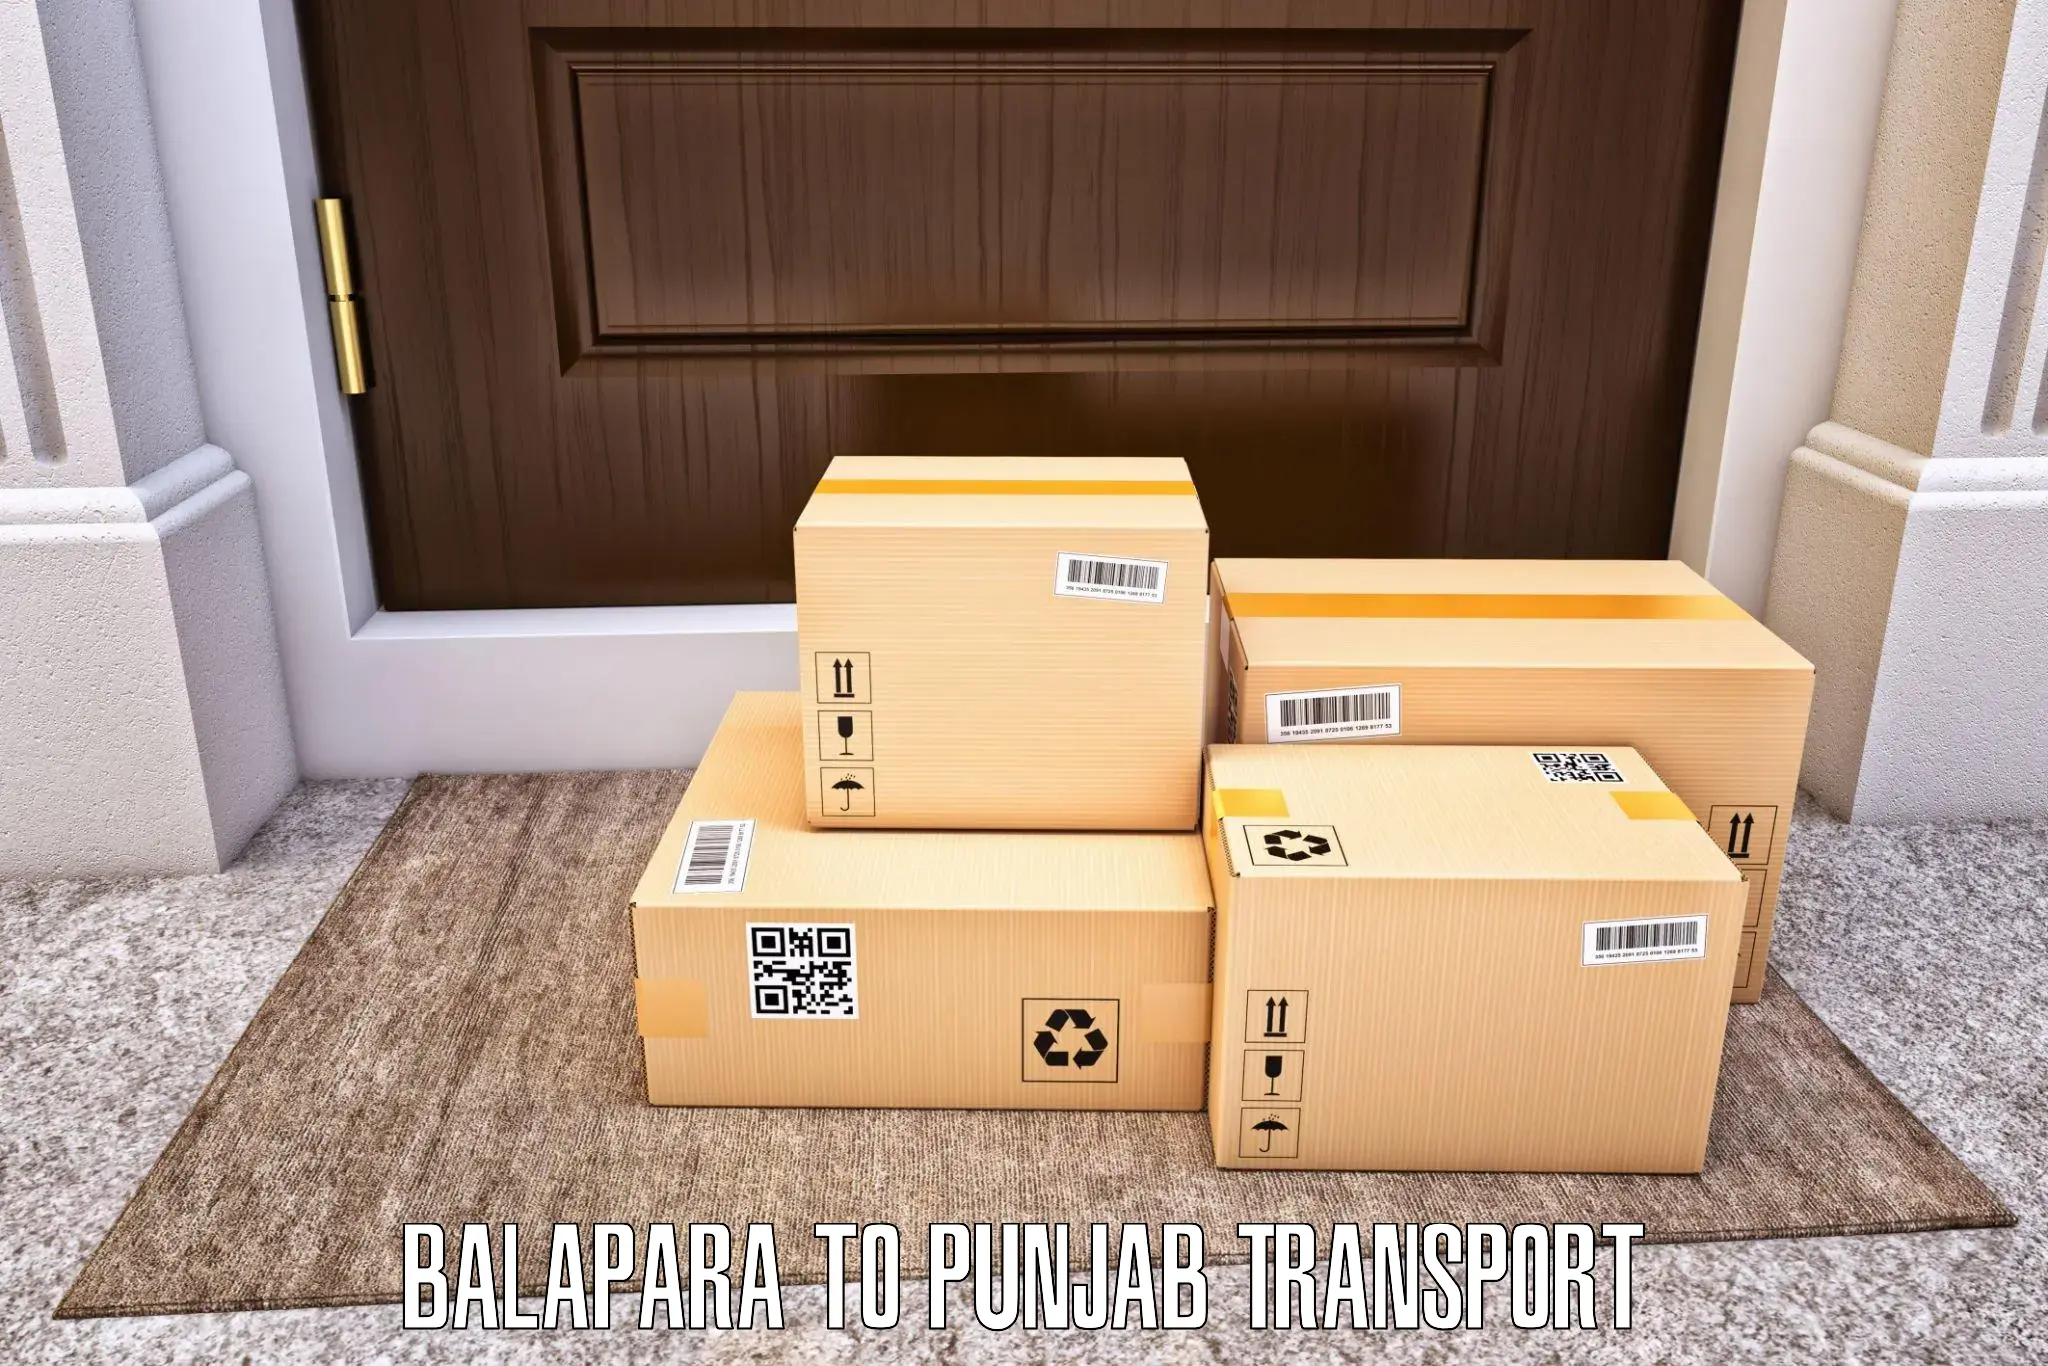 Furniture transport service Balapara to Anandpur Sahib